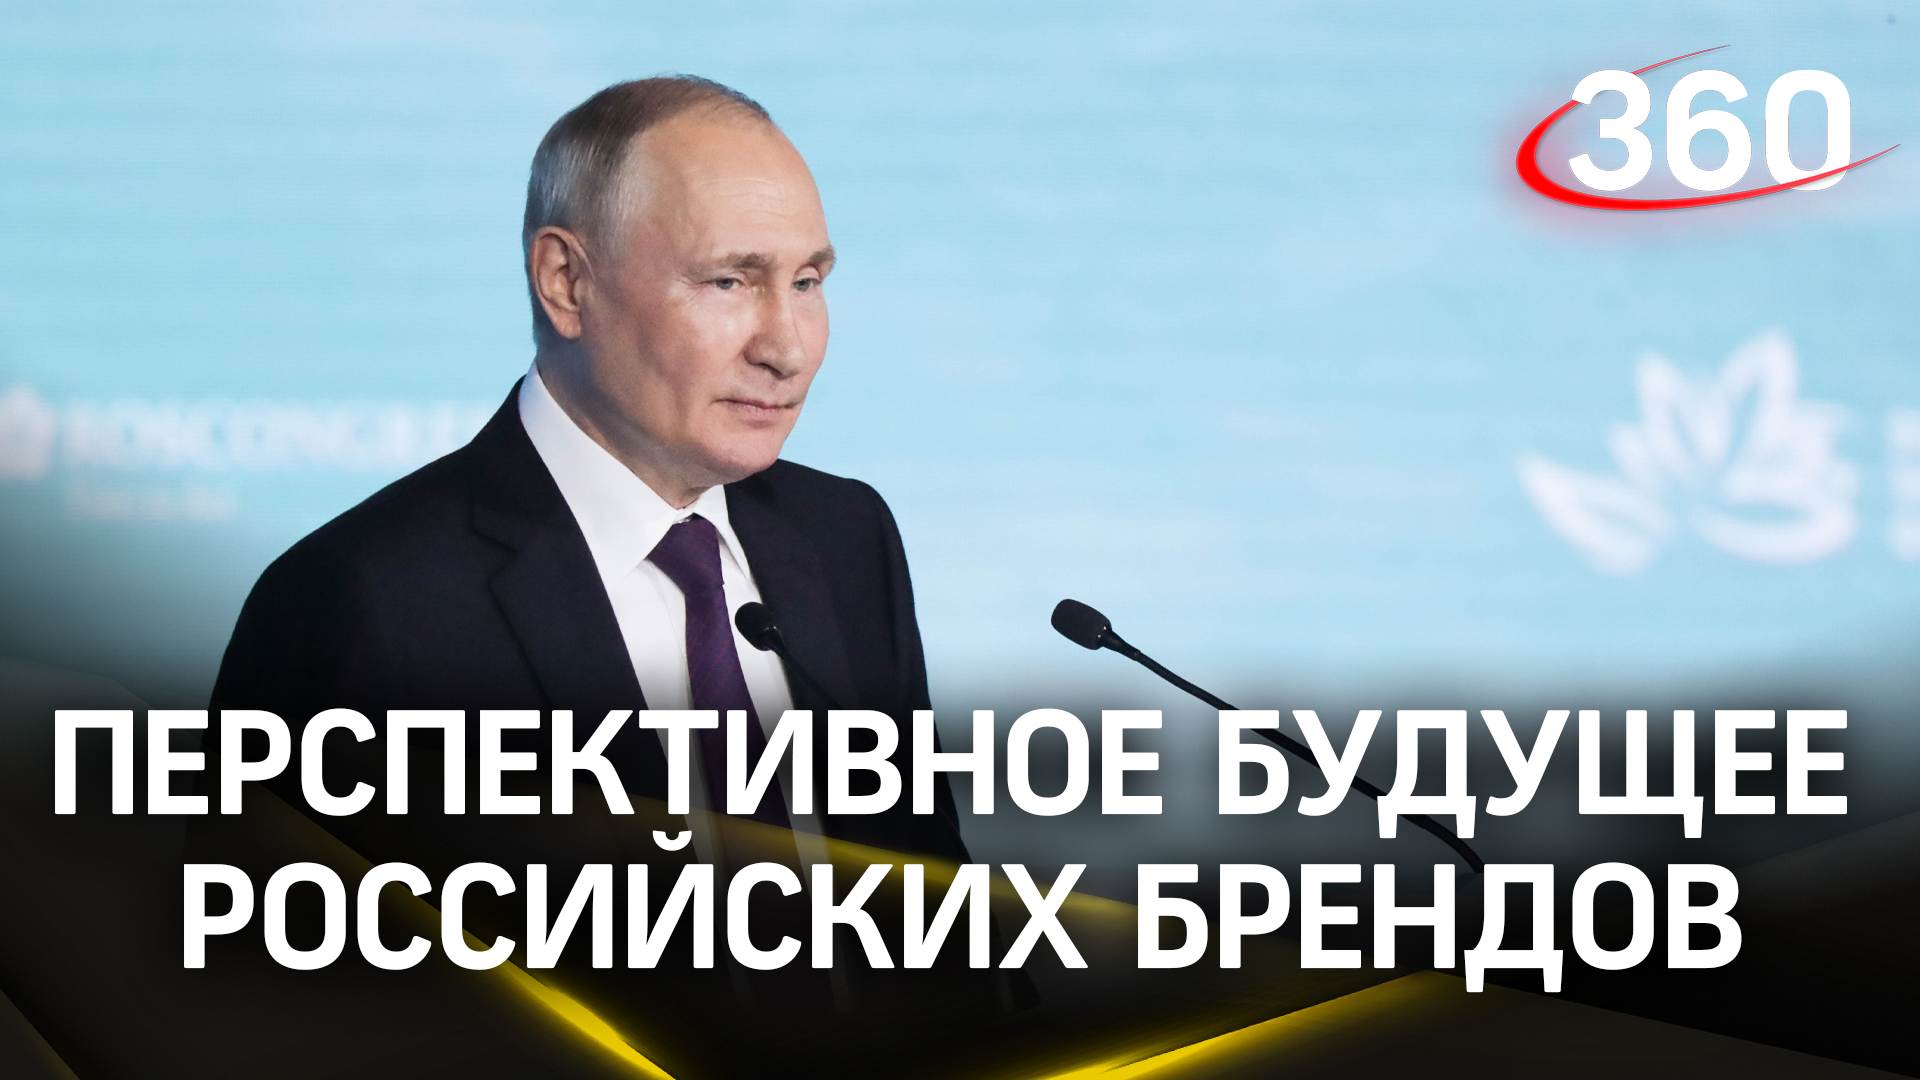 «Важнейшая задача - сделать наши российские марки и бренды более узнаваемыми» - Владимир Путин